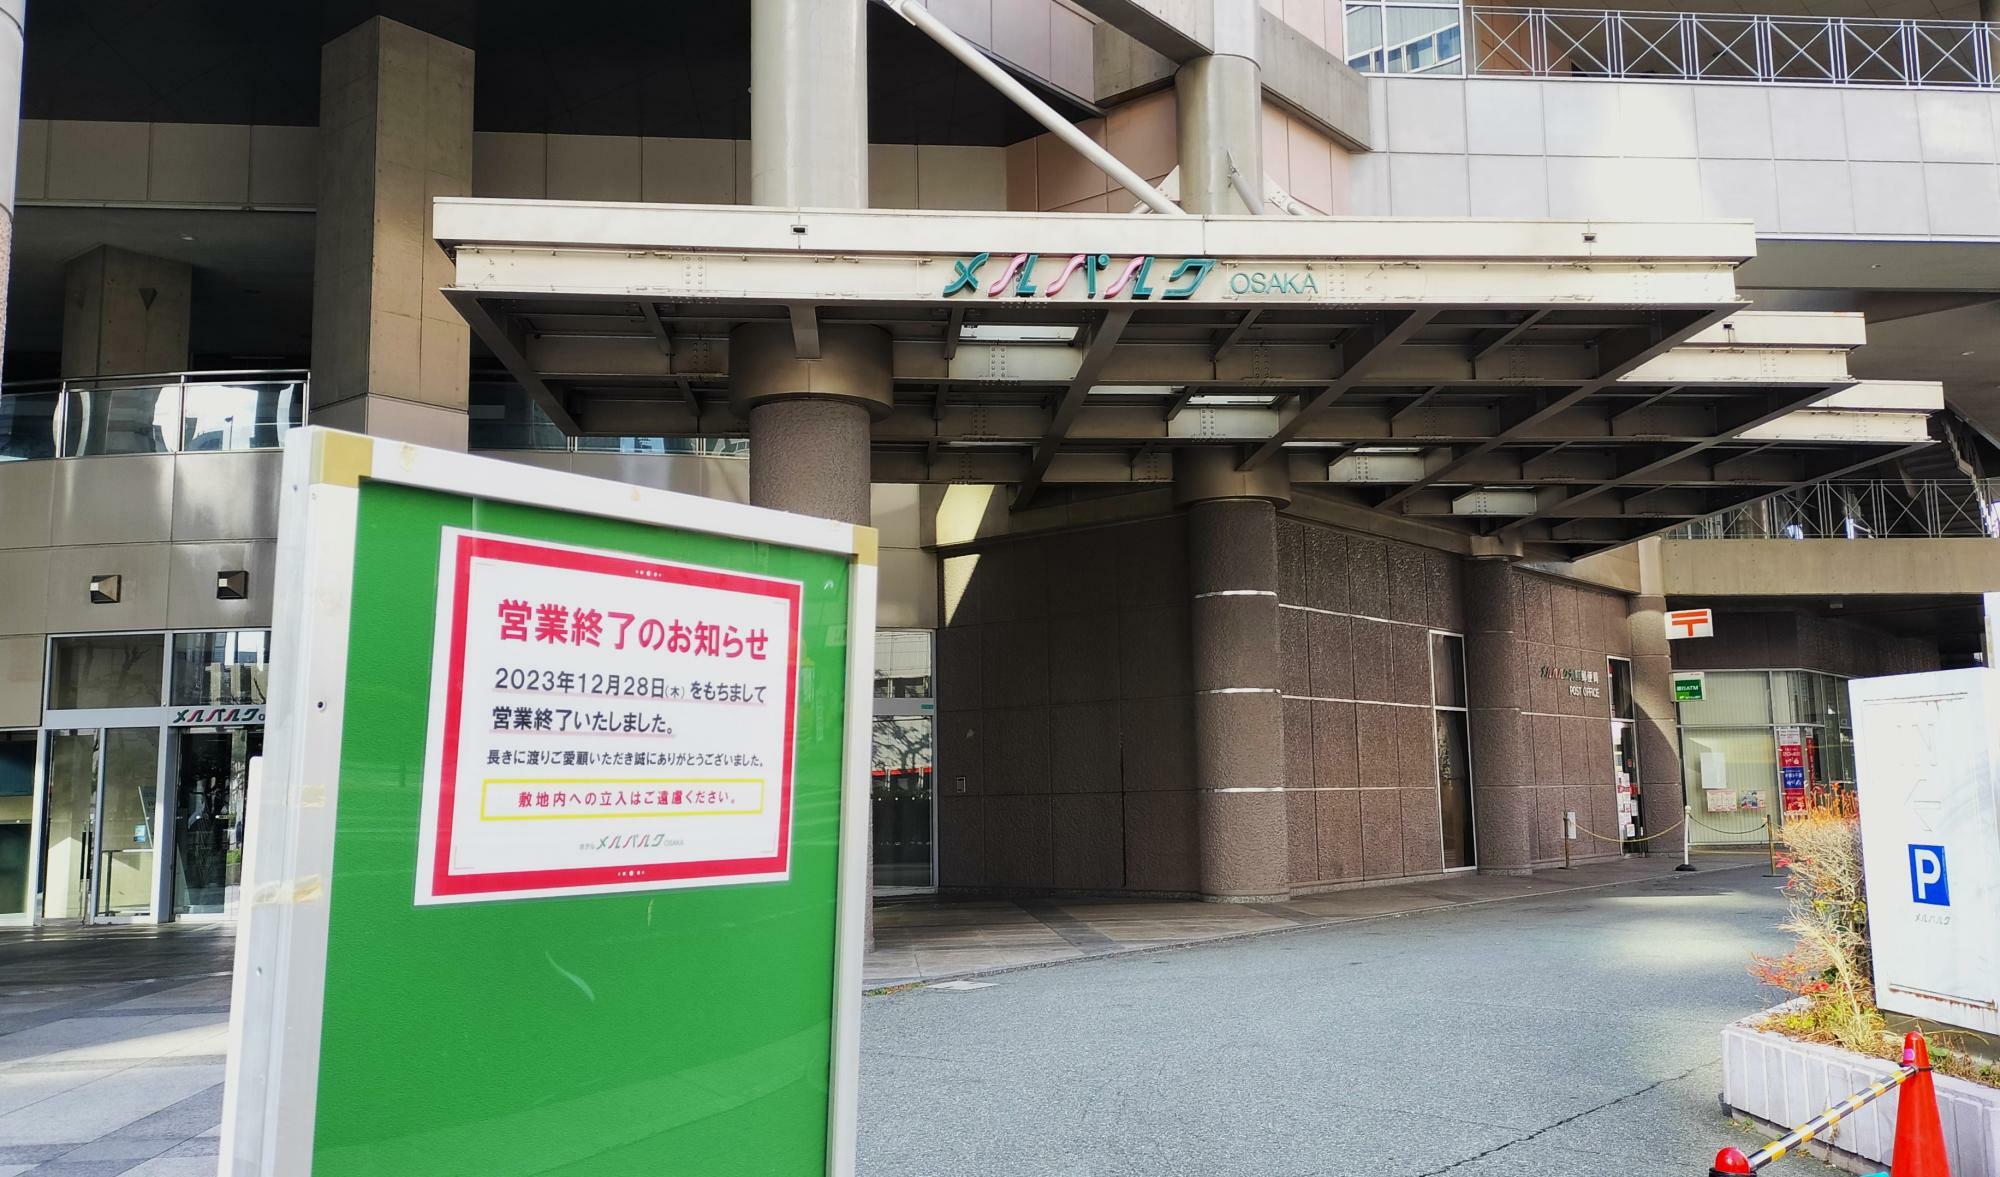 営業終了後の「メルパルク大阪」の入り口のあたりの様子。